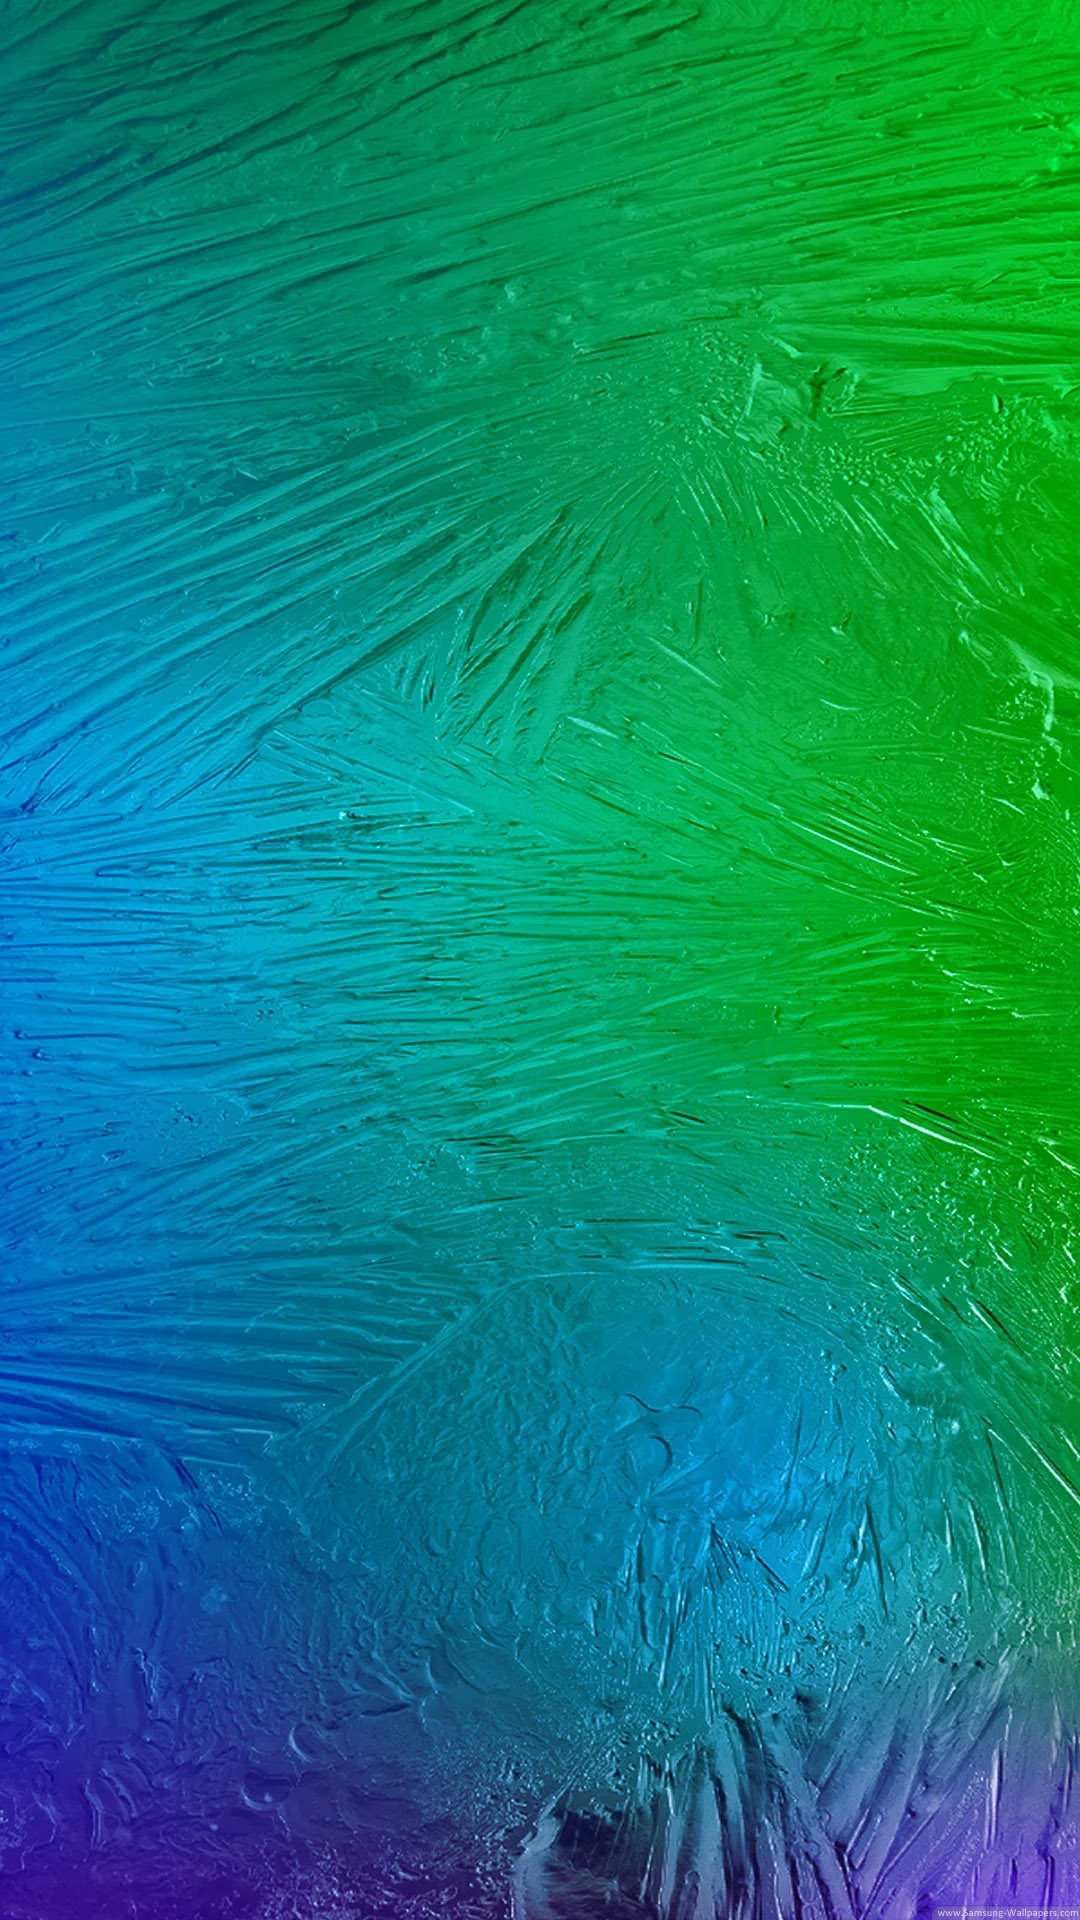 サムスンc7壁紙,青い,緑,アクア,ターコイズ,水